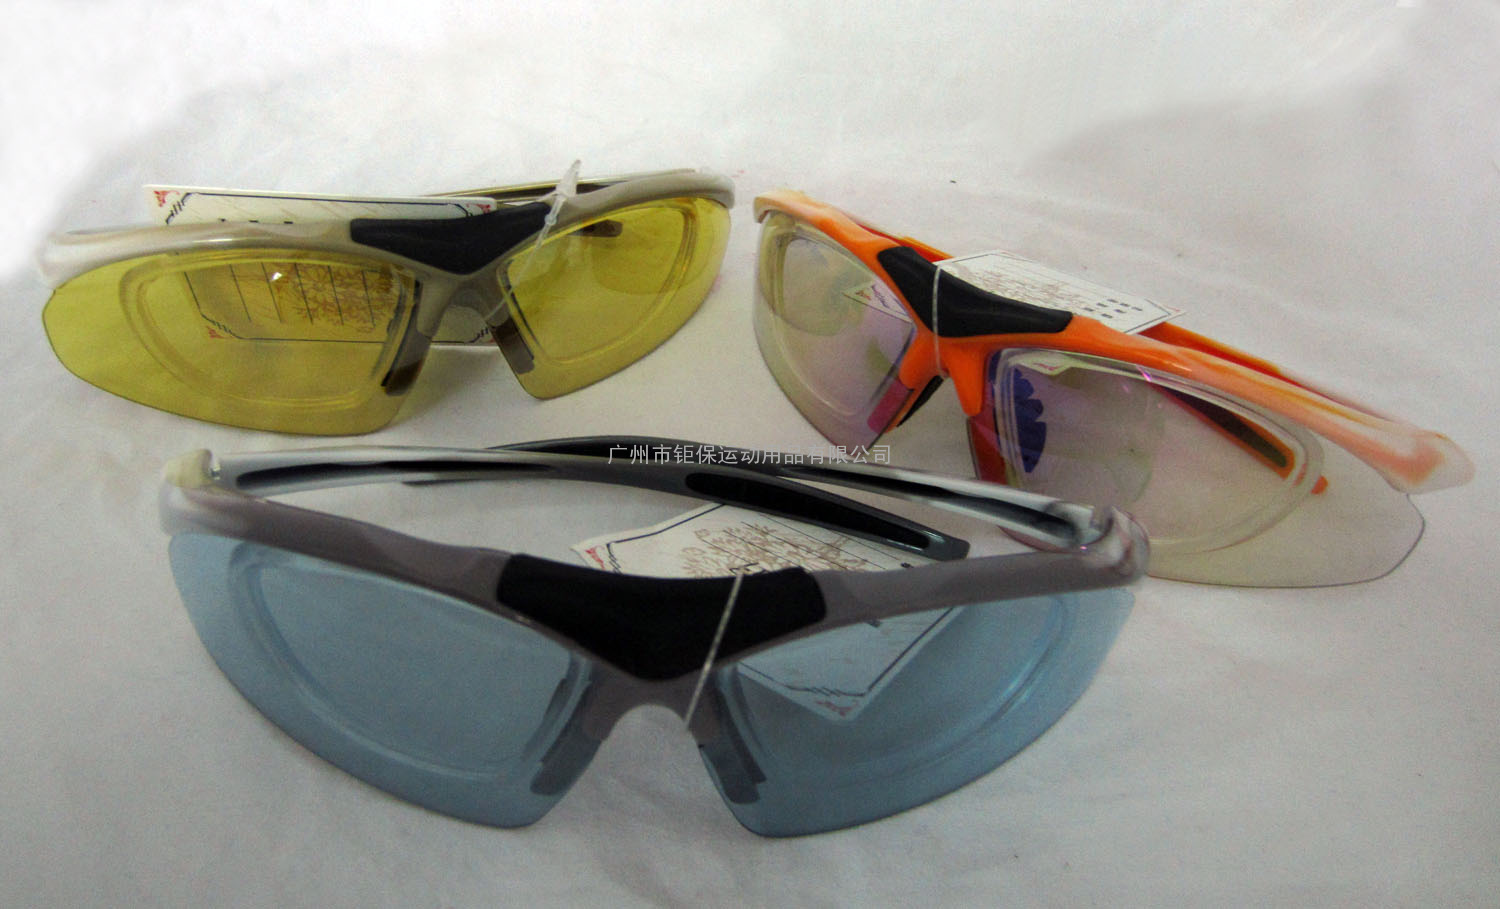 厂家直销太阳镜/运动太阳眼镜/墨镜/太阳偏光镜